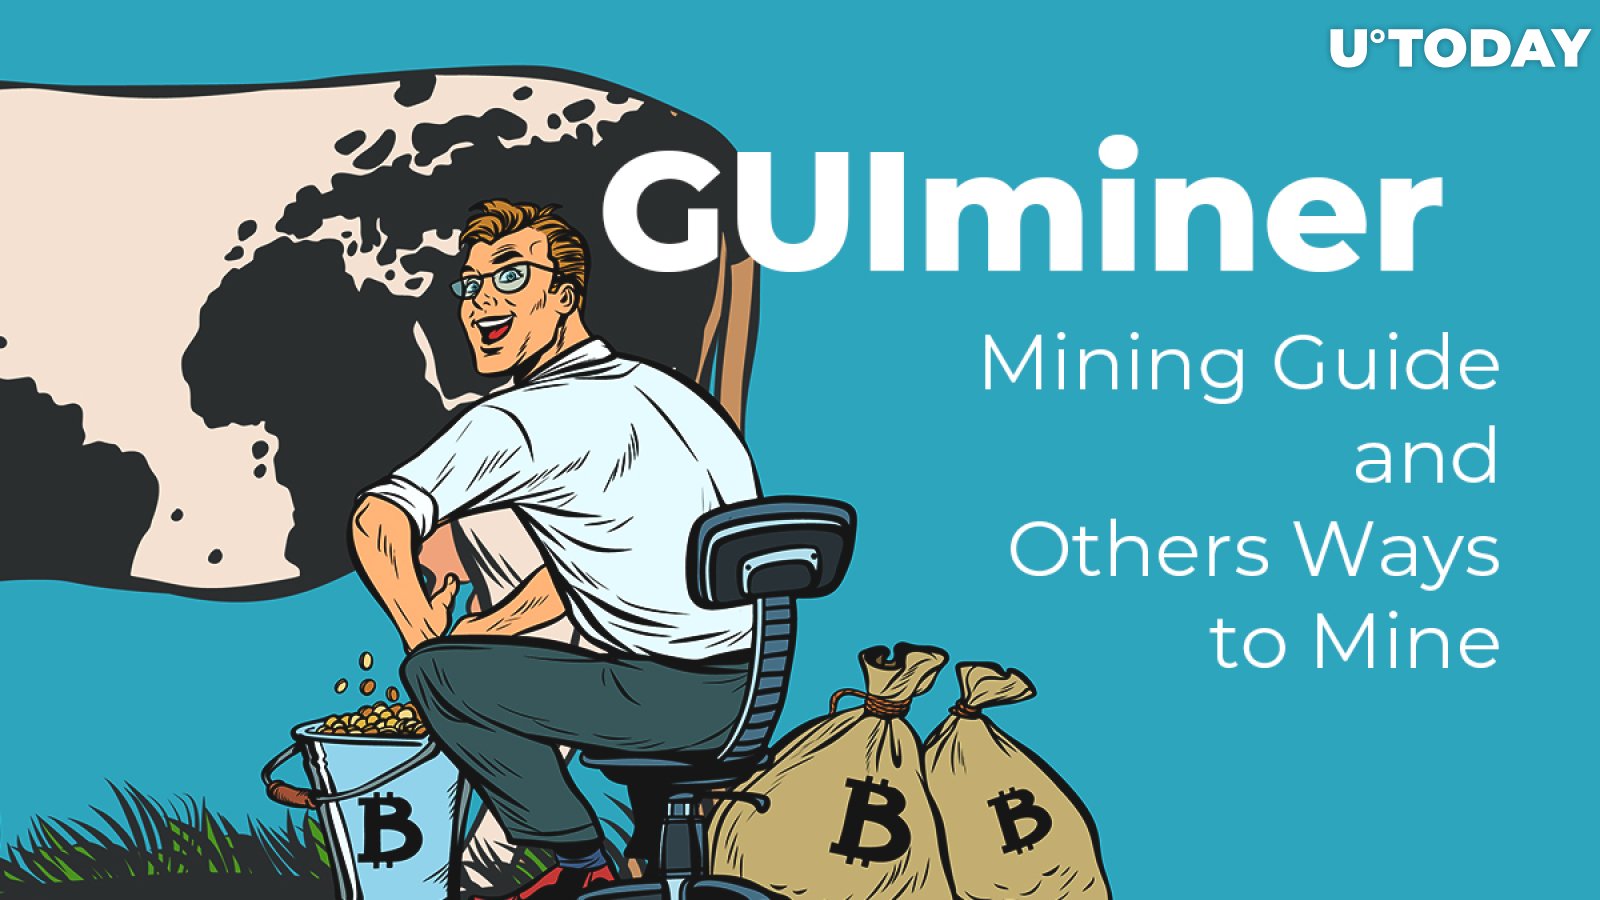 guiminer - széles körű eszköz a Bitcoin bányászathoz - Technológia - 